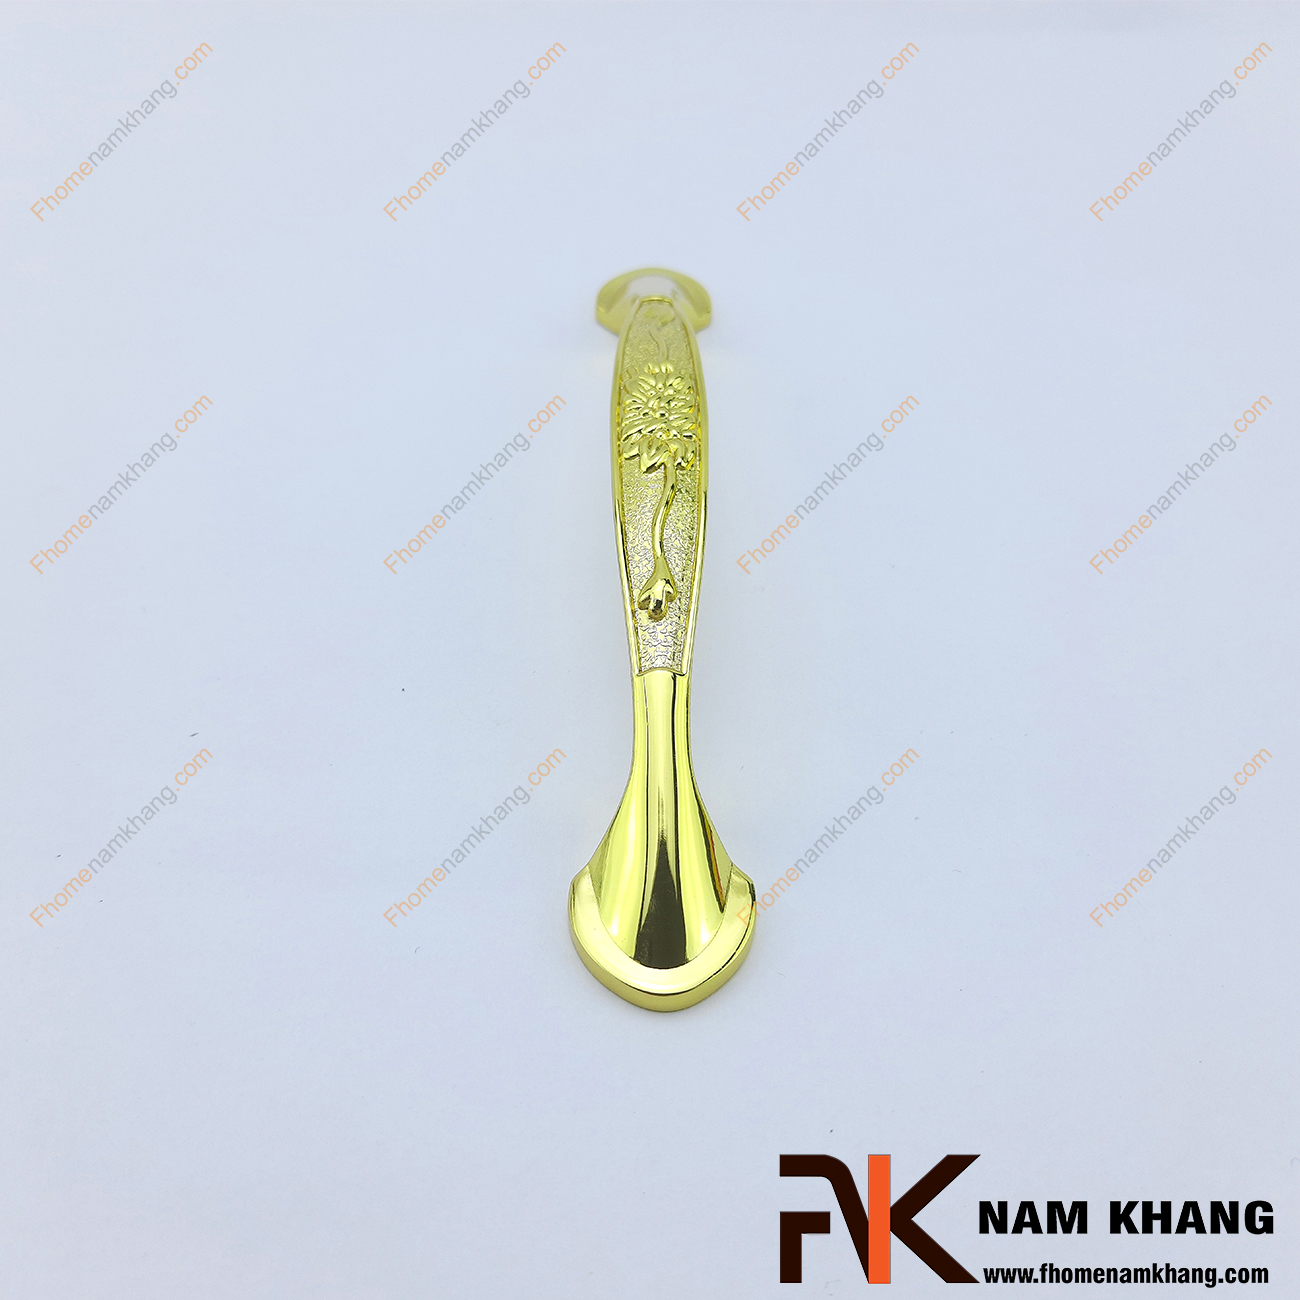 Tay Nắm tủ mạ vàng NK037-V có họa tiết chủ đạo hoa lá nho cổ điển. Sản phẩm được mạ vàng bóng ánh kim và được gia công hoàn thiện mặt mỹ thuật.